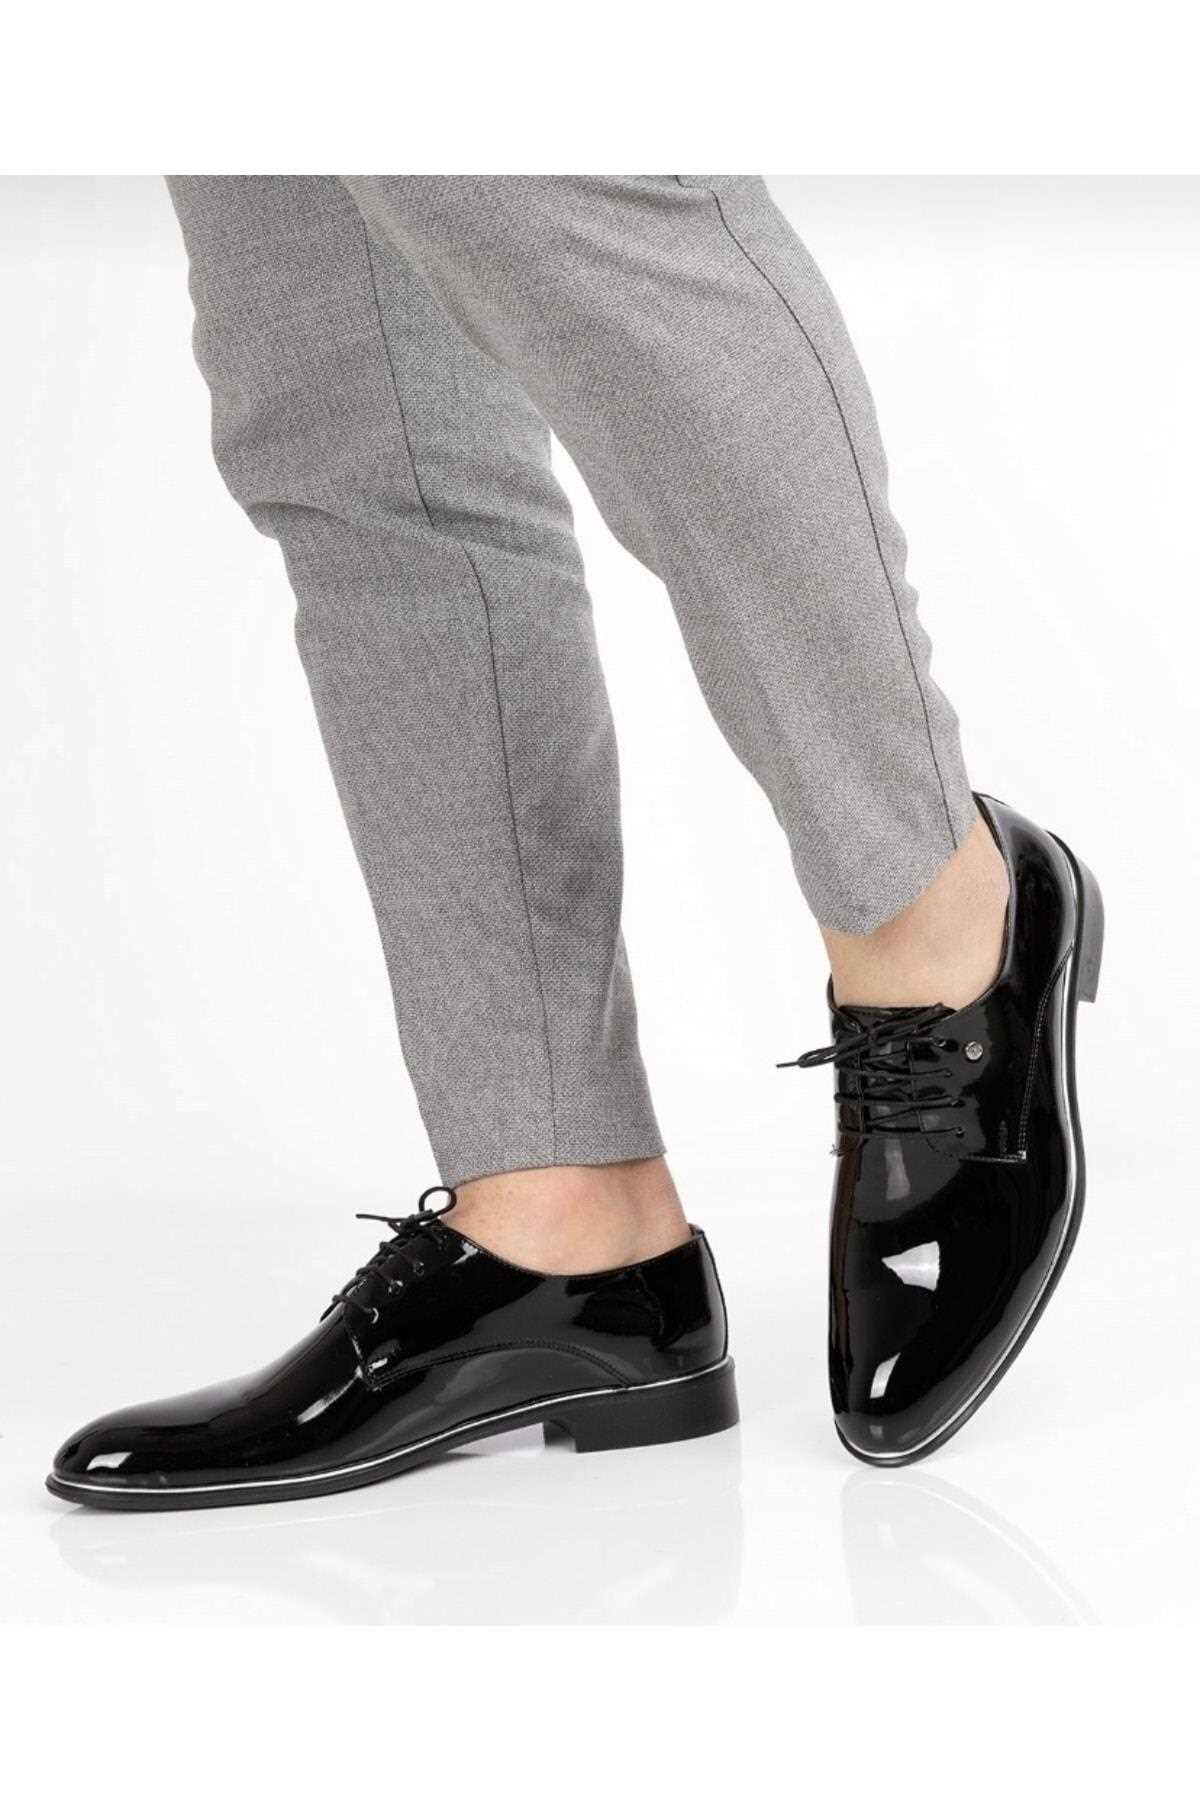 فروش پستی کفش رسمی مردانه چرم طبیعی زیبا GÜR MODA AYAKKABI رنگ مشکی کد ty303516825